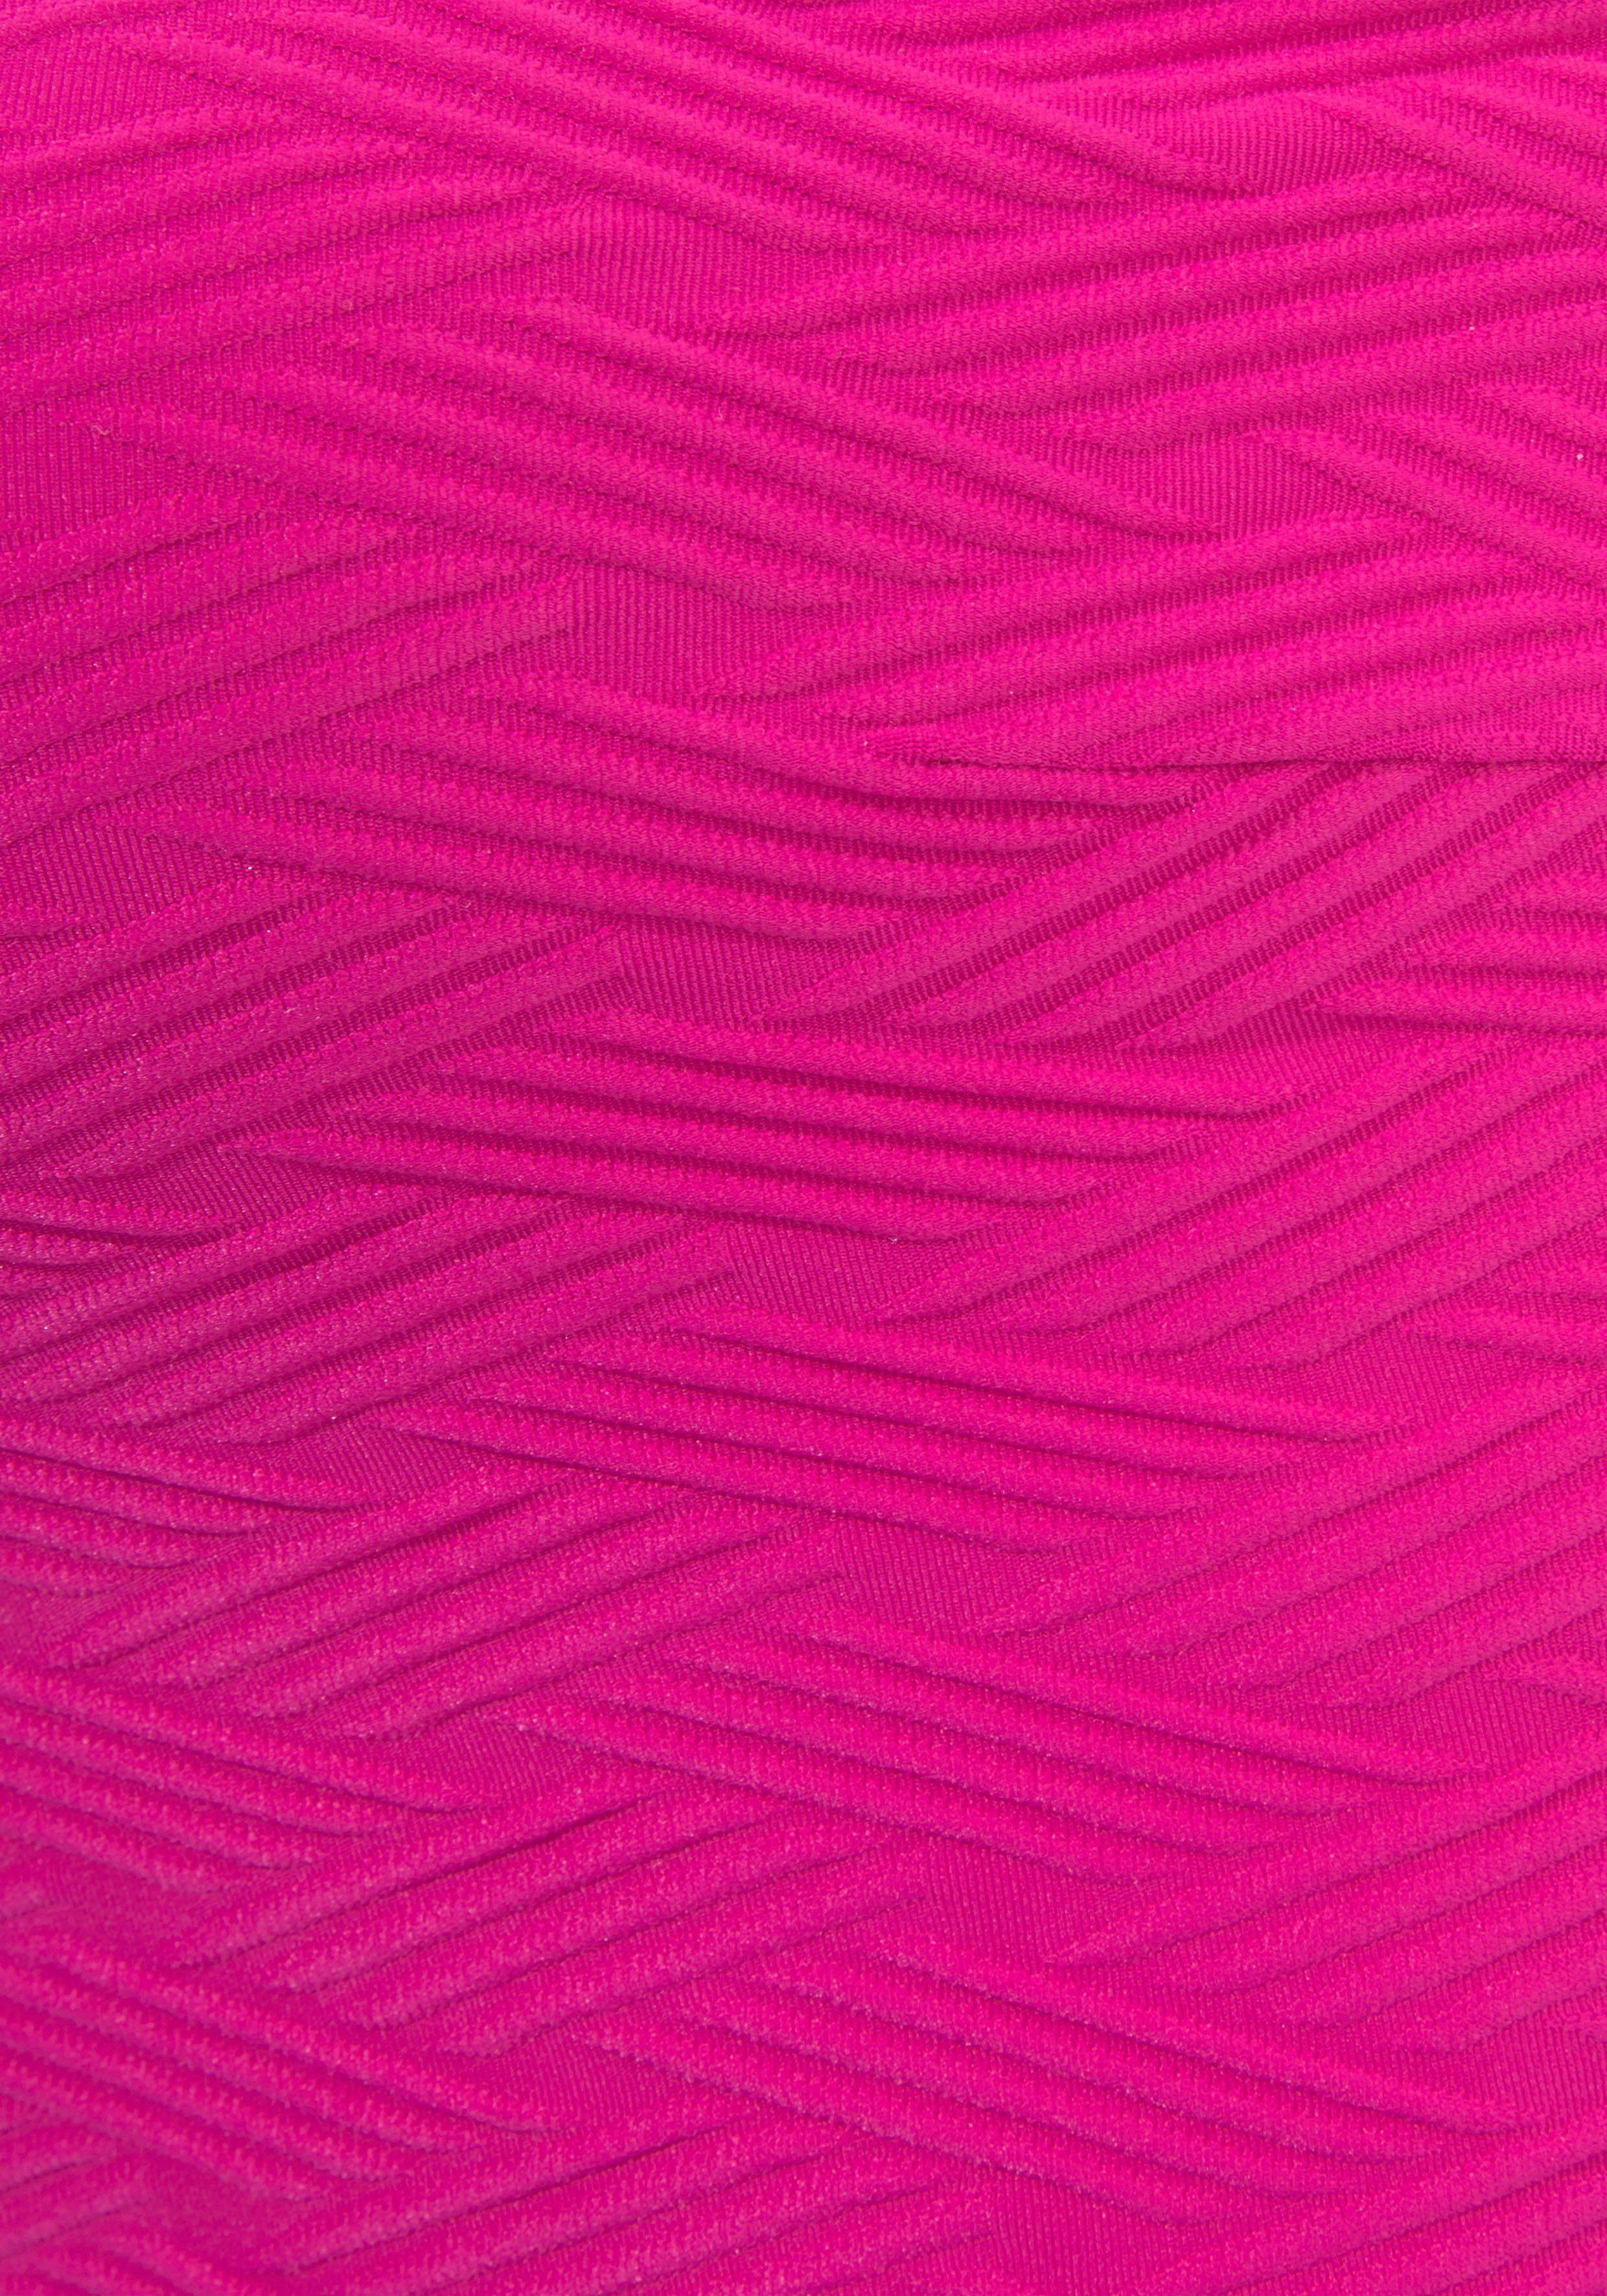 Sunseeker Crop-Bikini-Top Loretta, mit pink Strukturmuster